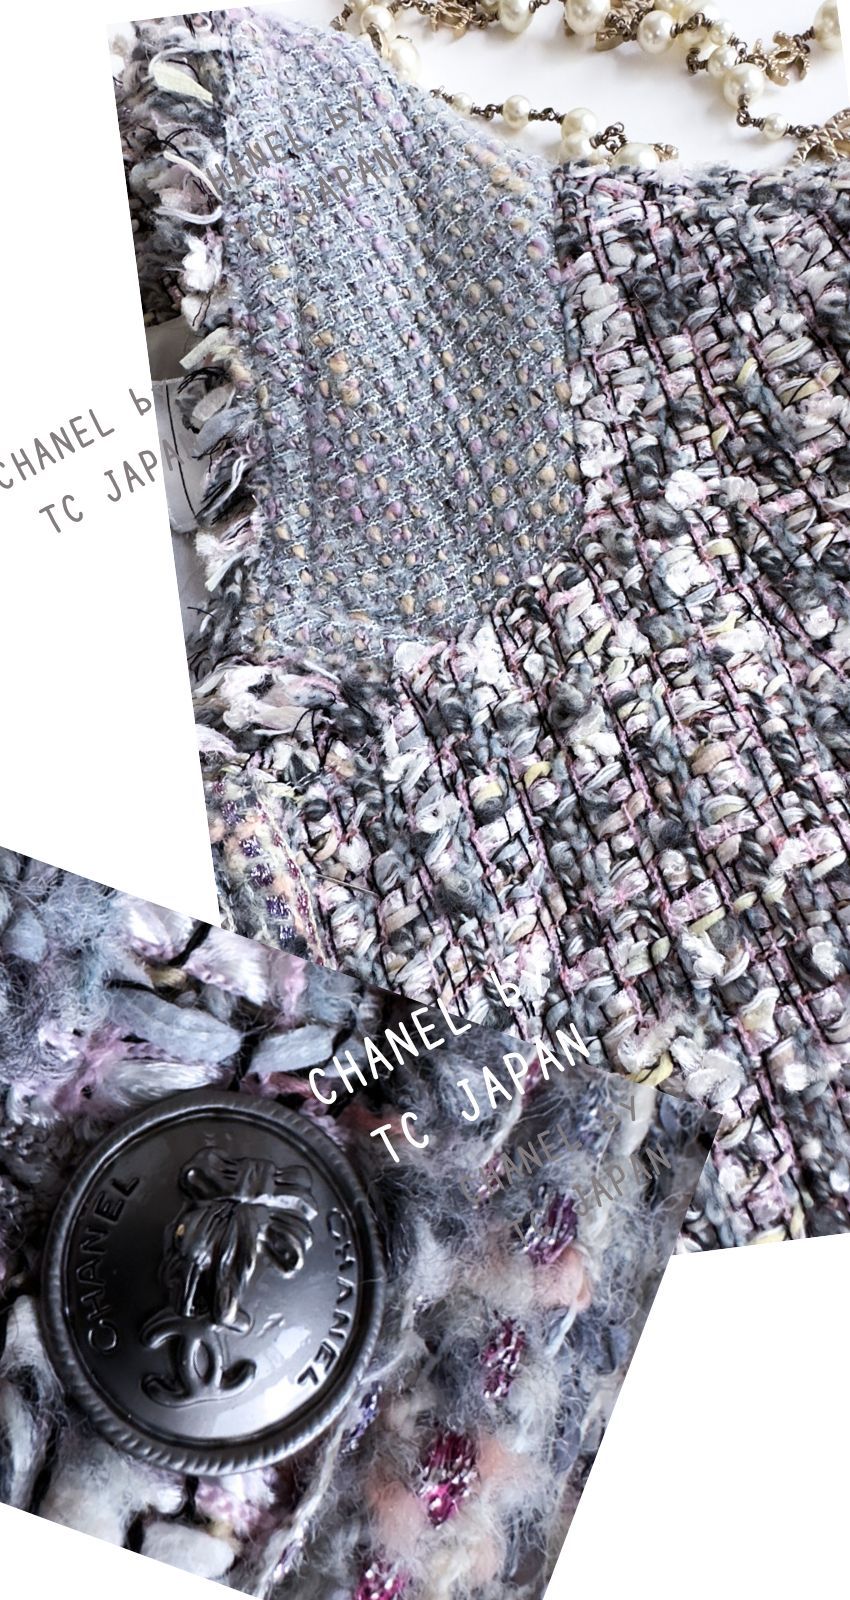 シャネル ジャケット CHANEL 大人気 貴重な ルサージュ グレー ラベンダー ピンク 美人見え ツイード 42 美品